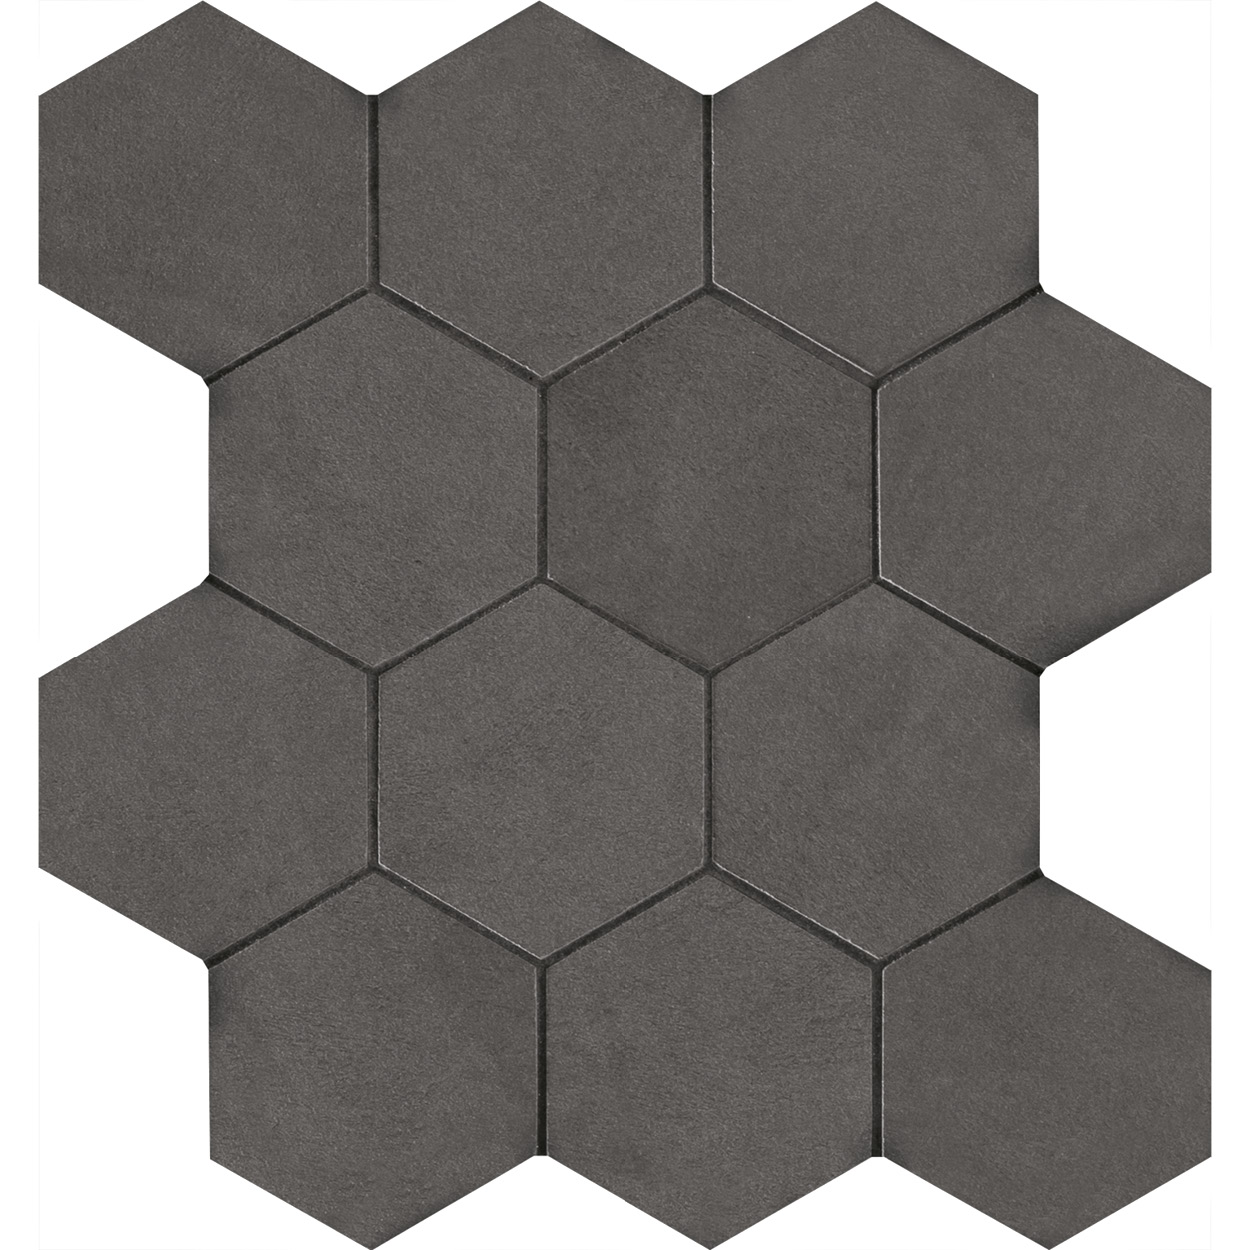 3 X 3 Seamless CL_03 hexagon